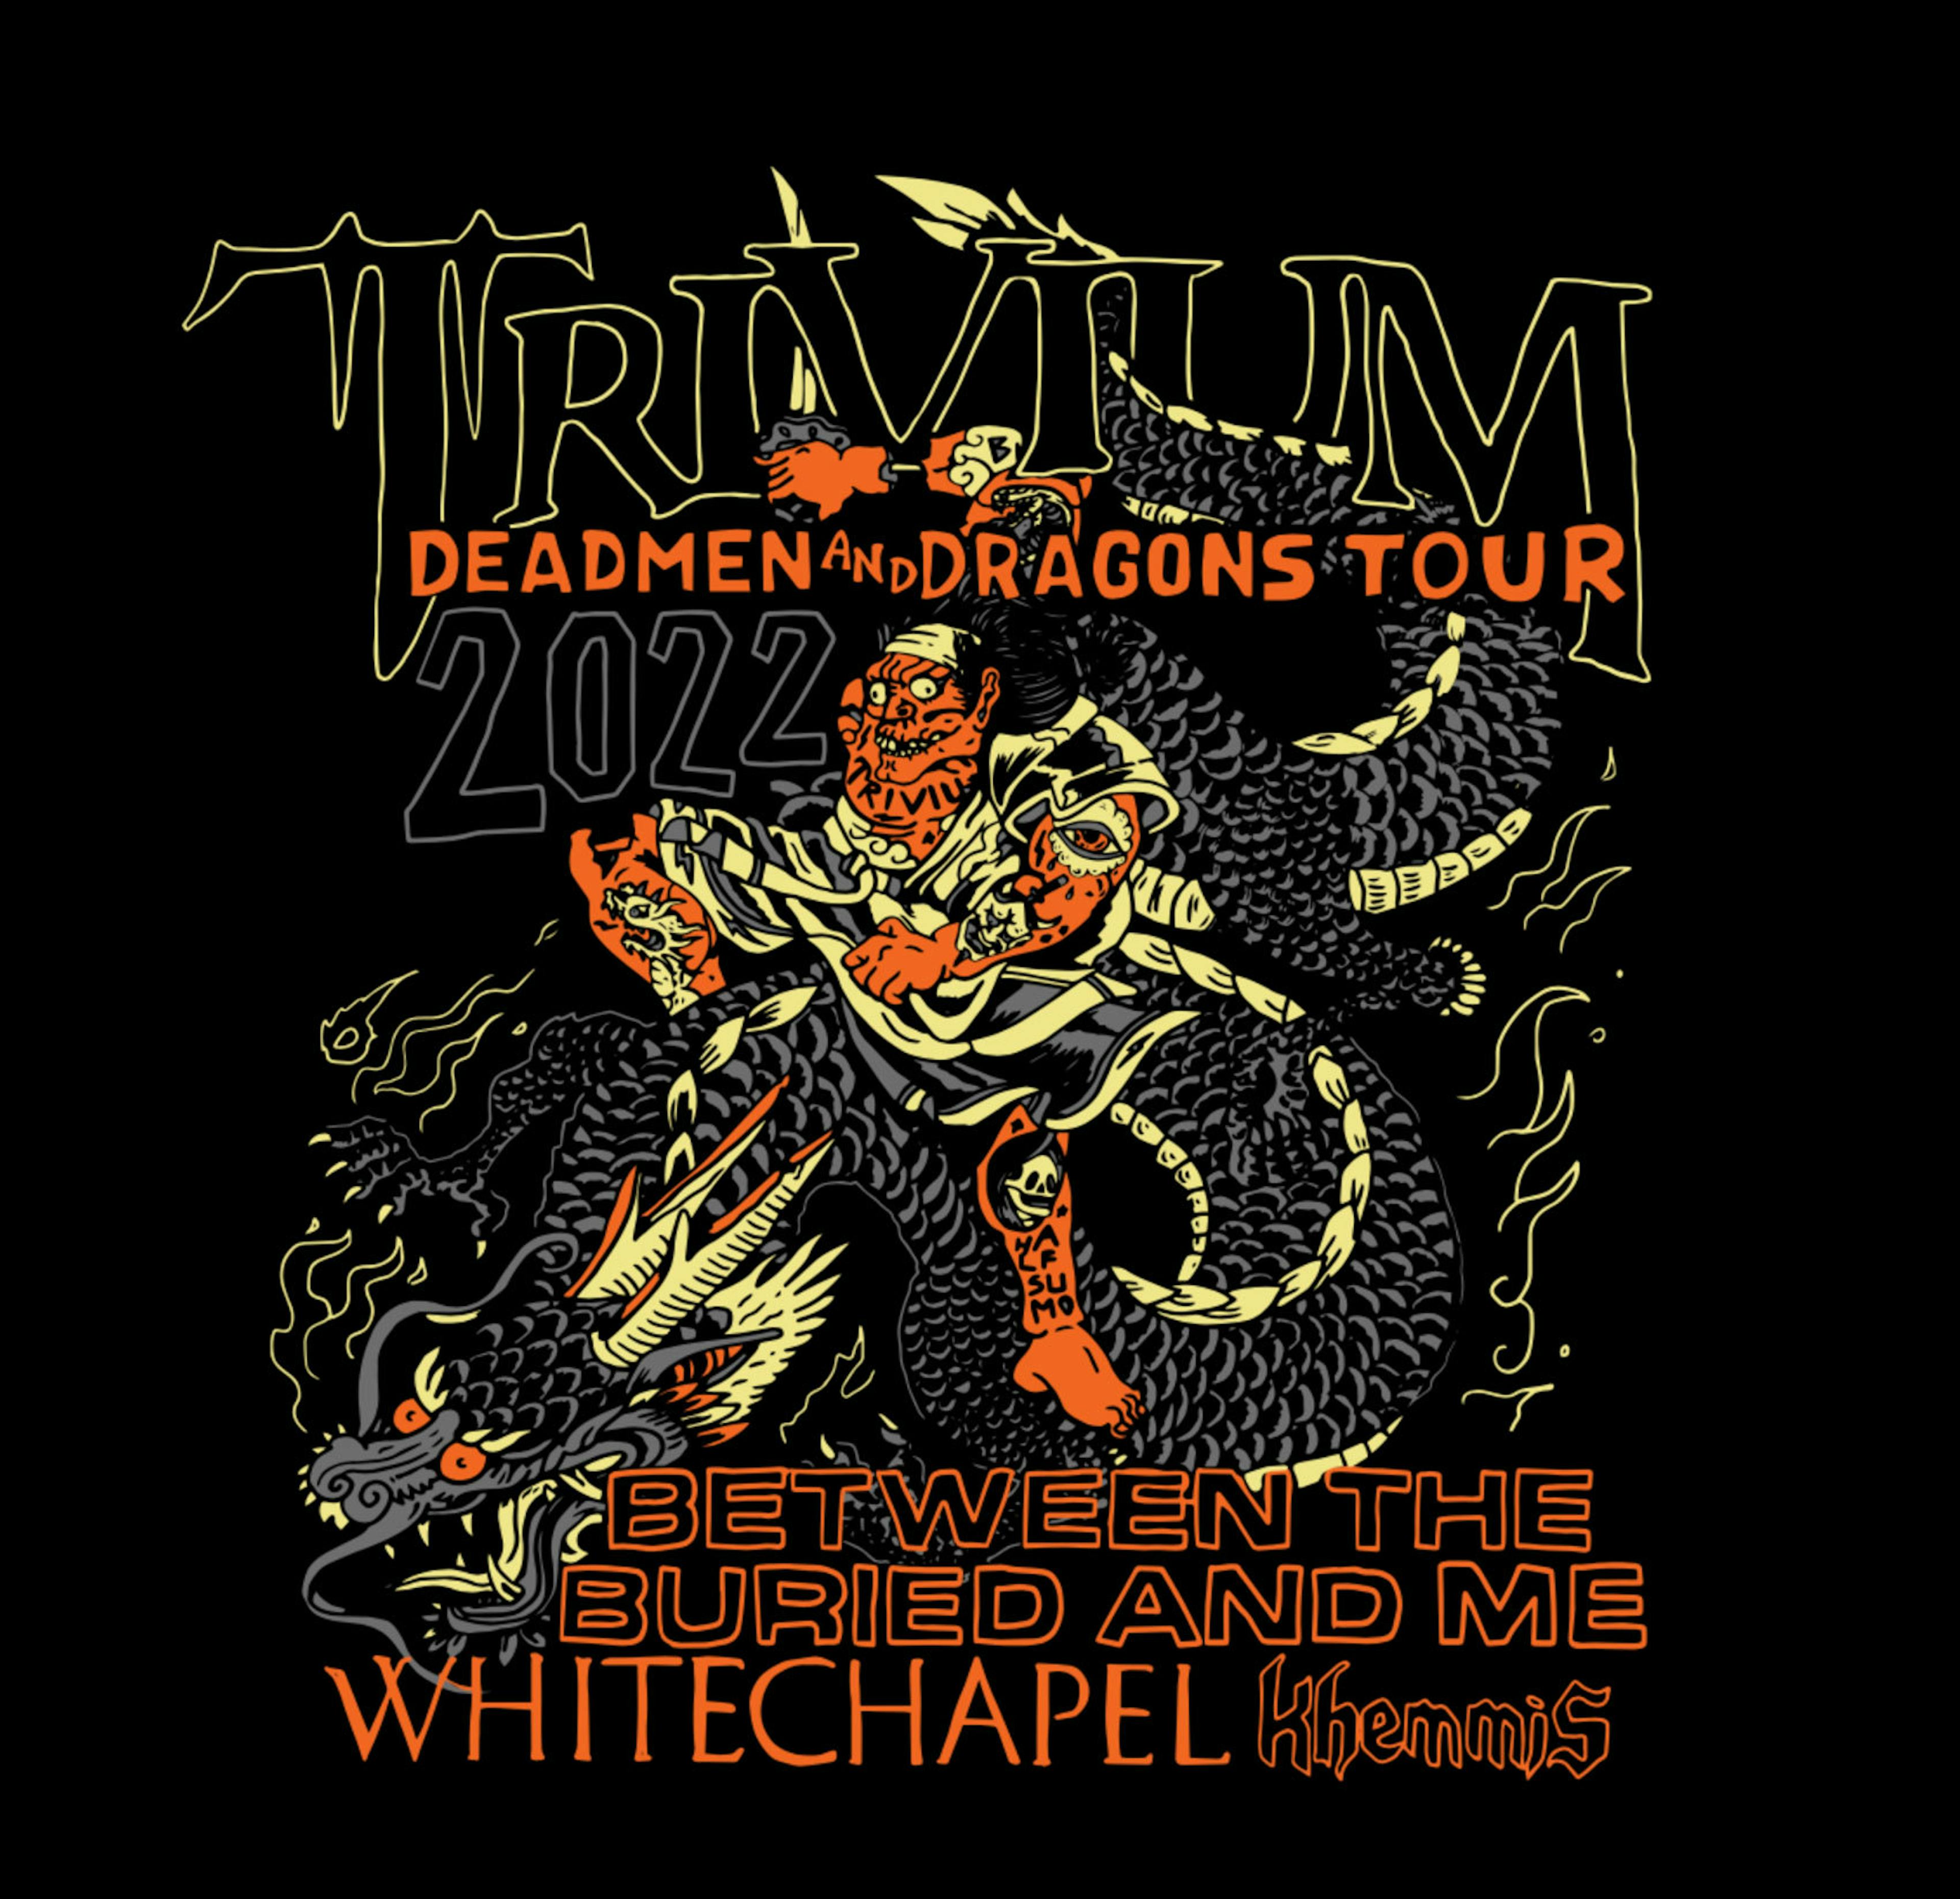 trivium tour statistics